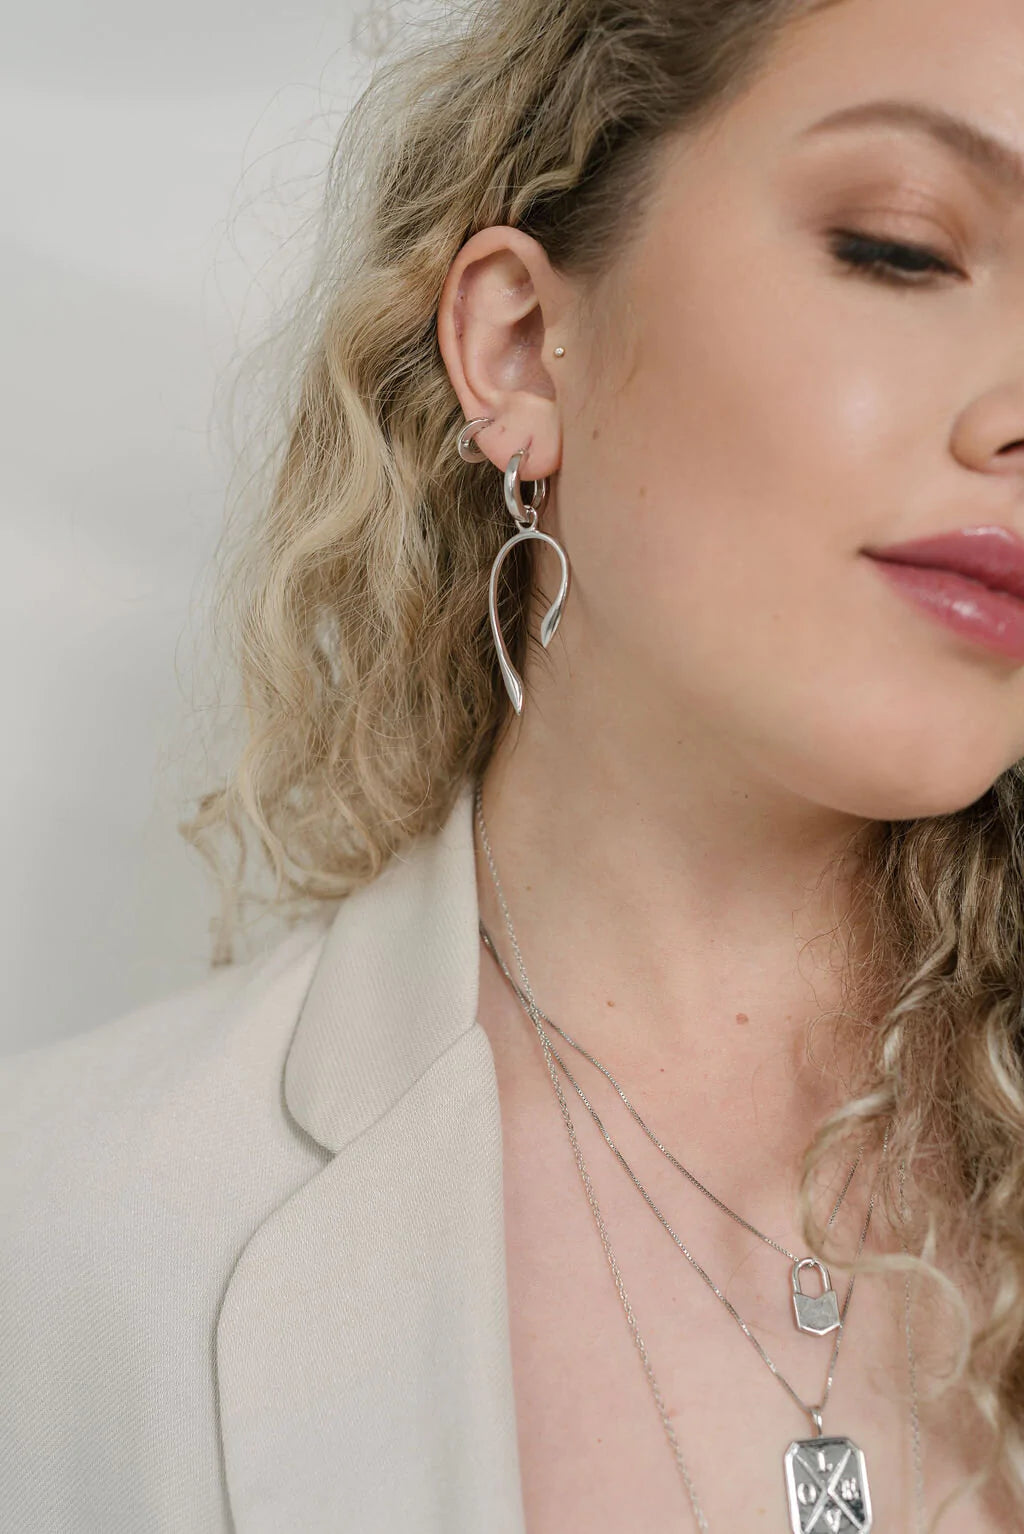 Model wearing the Aki Earrings by Sarah Mulder in Rhodium